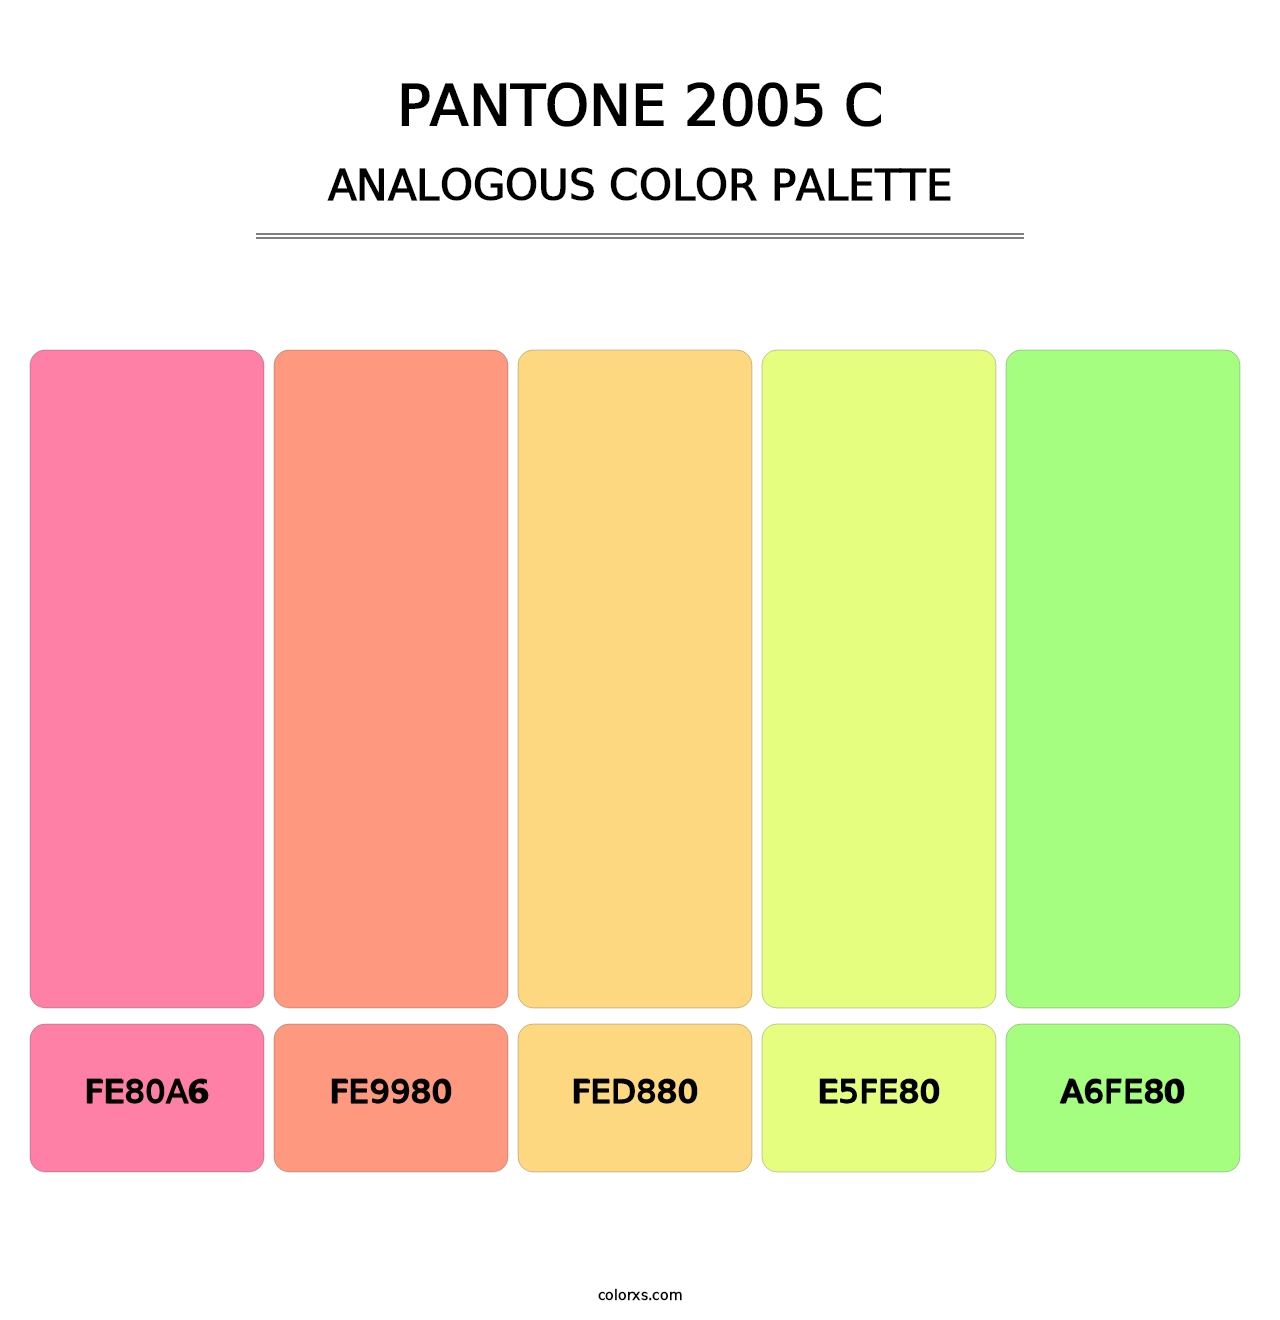 PANTONE 2005 C - Analogous Color Palette